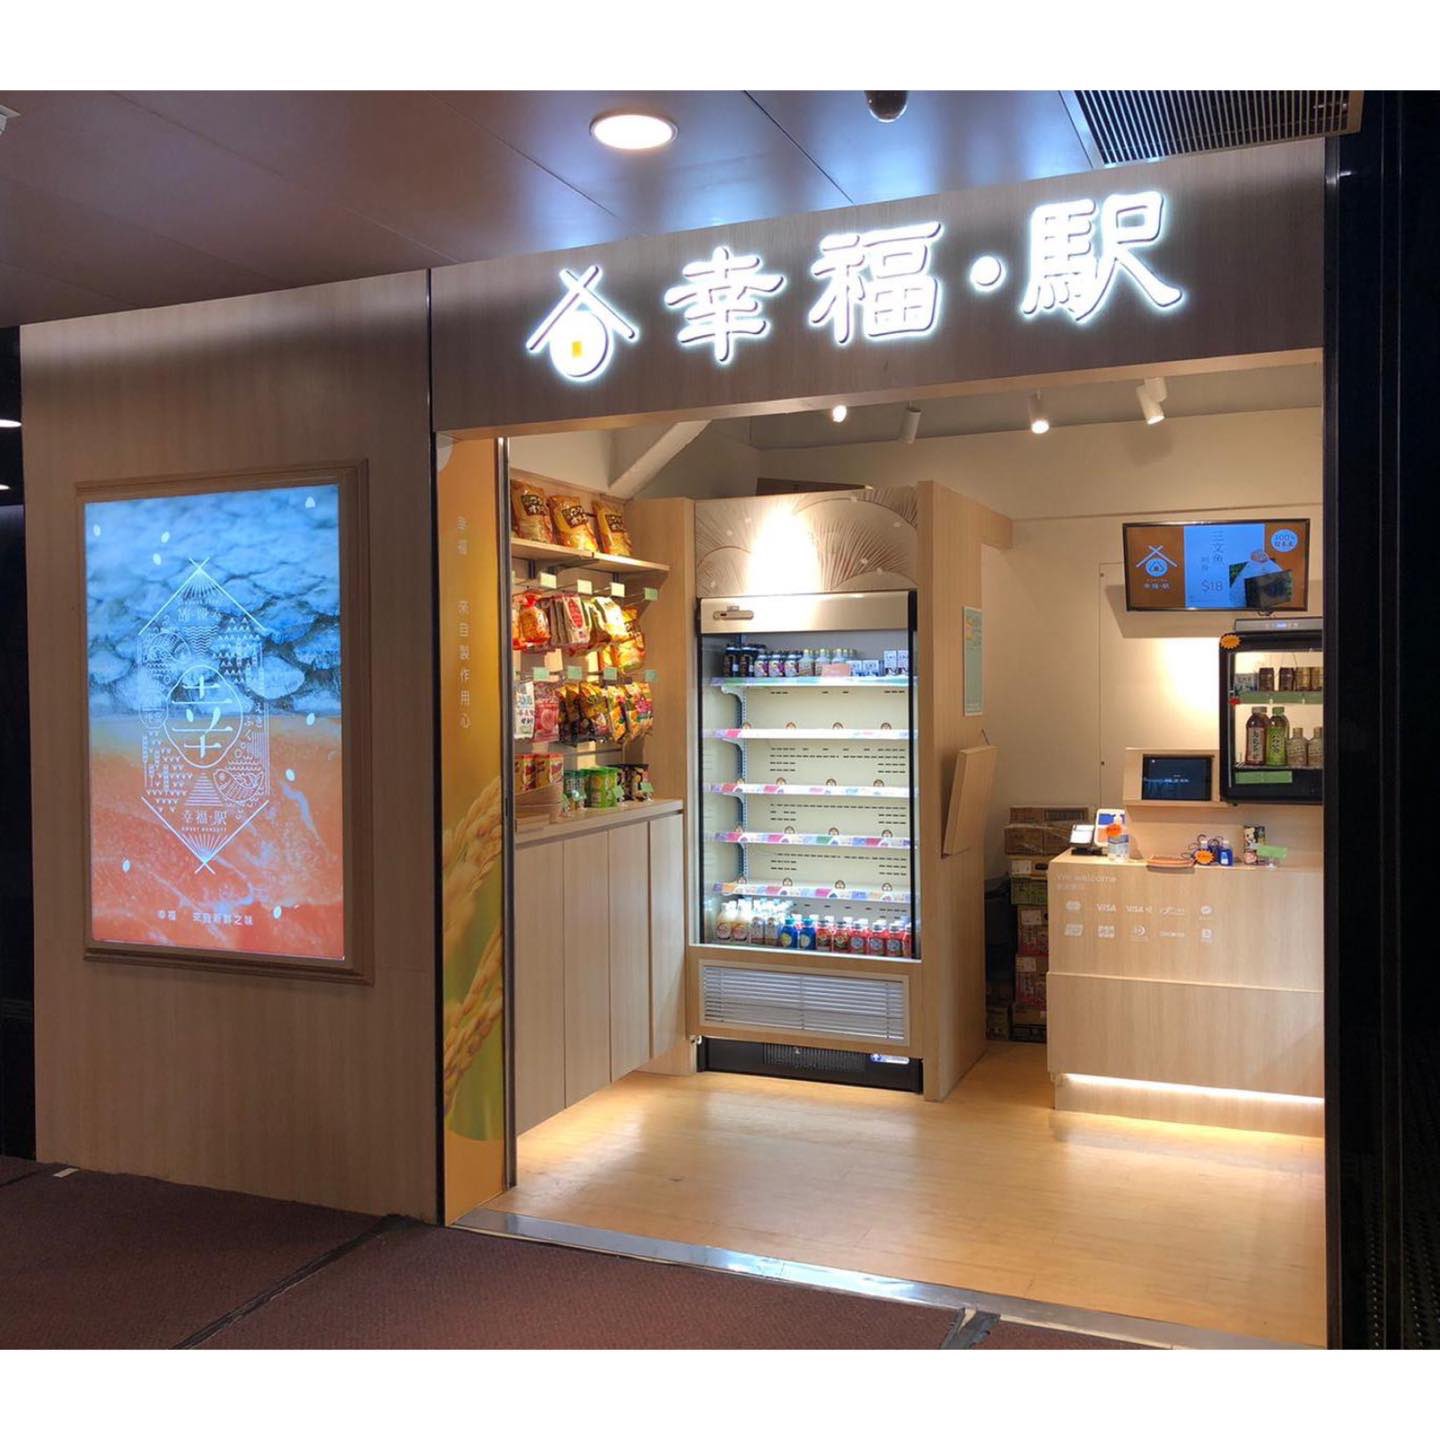 幸福·駅的特許經營香港區加盟店項目9